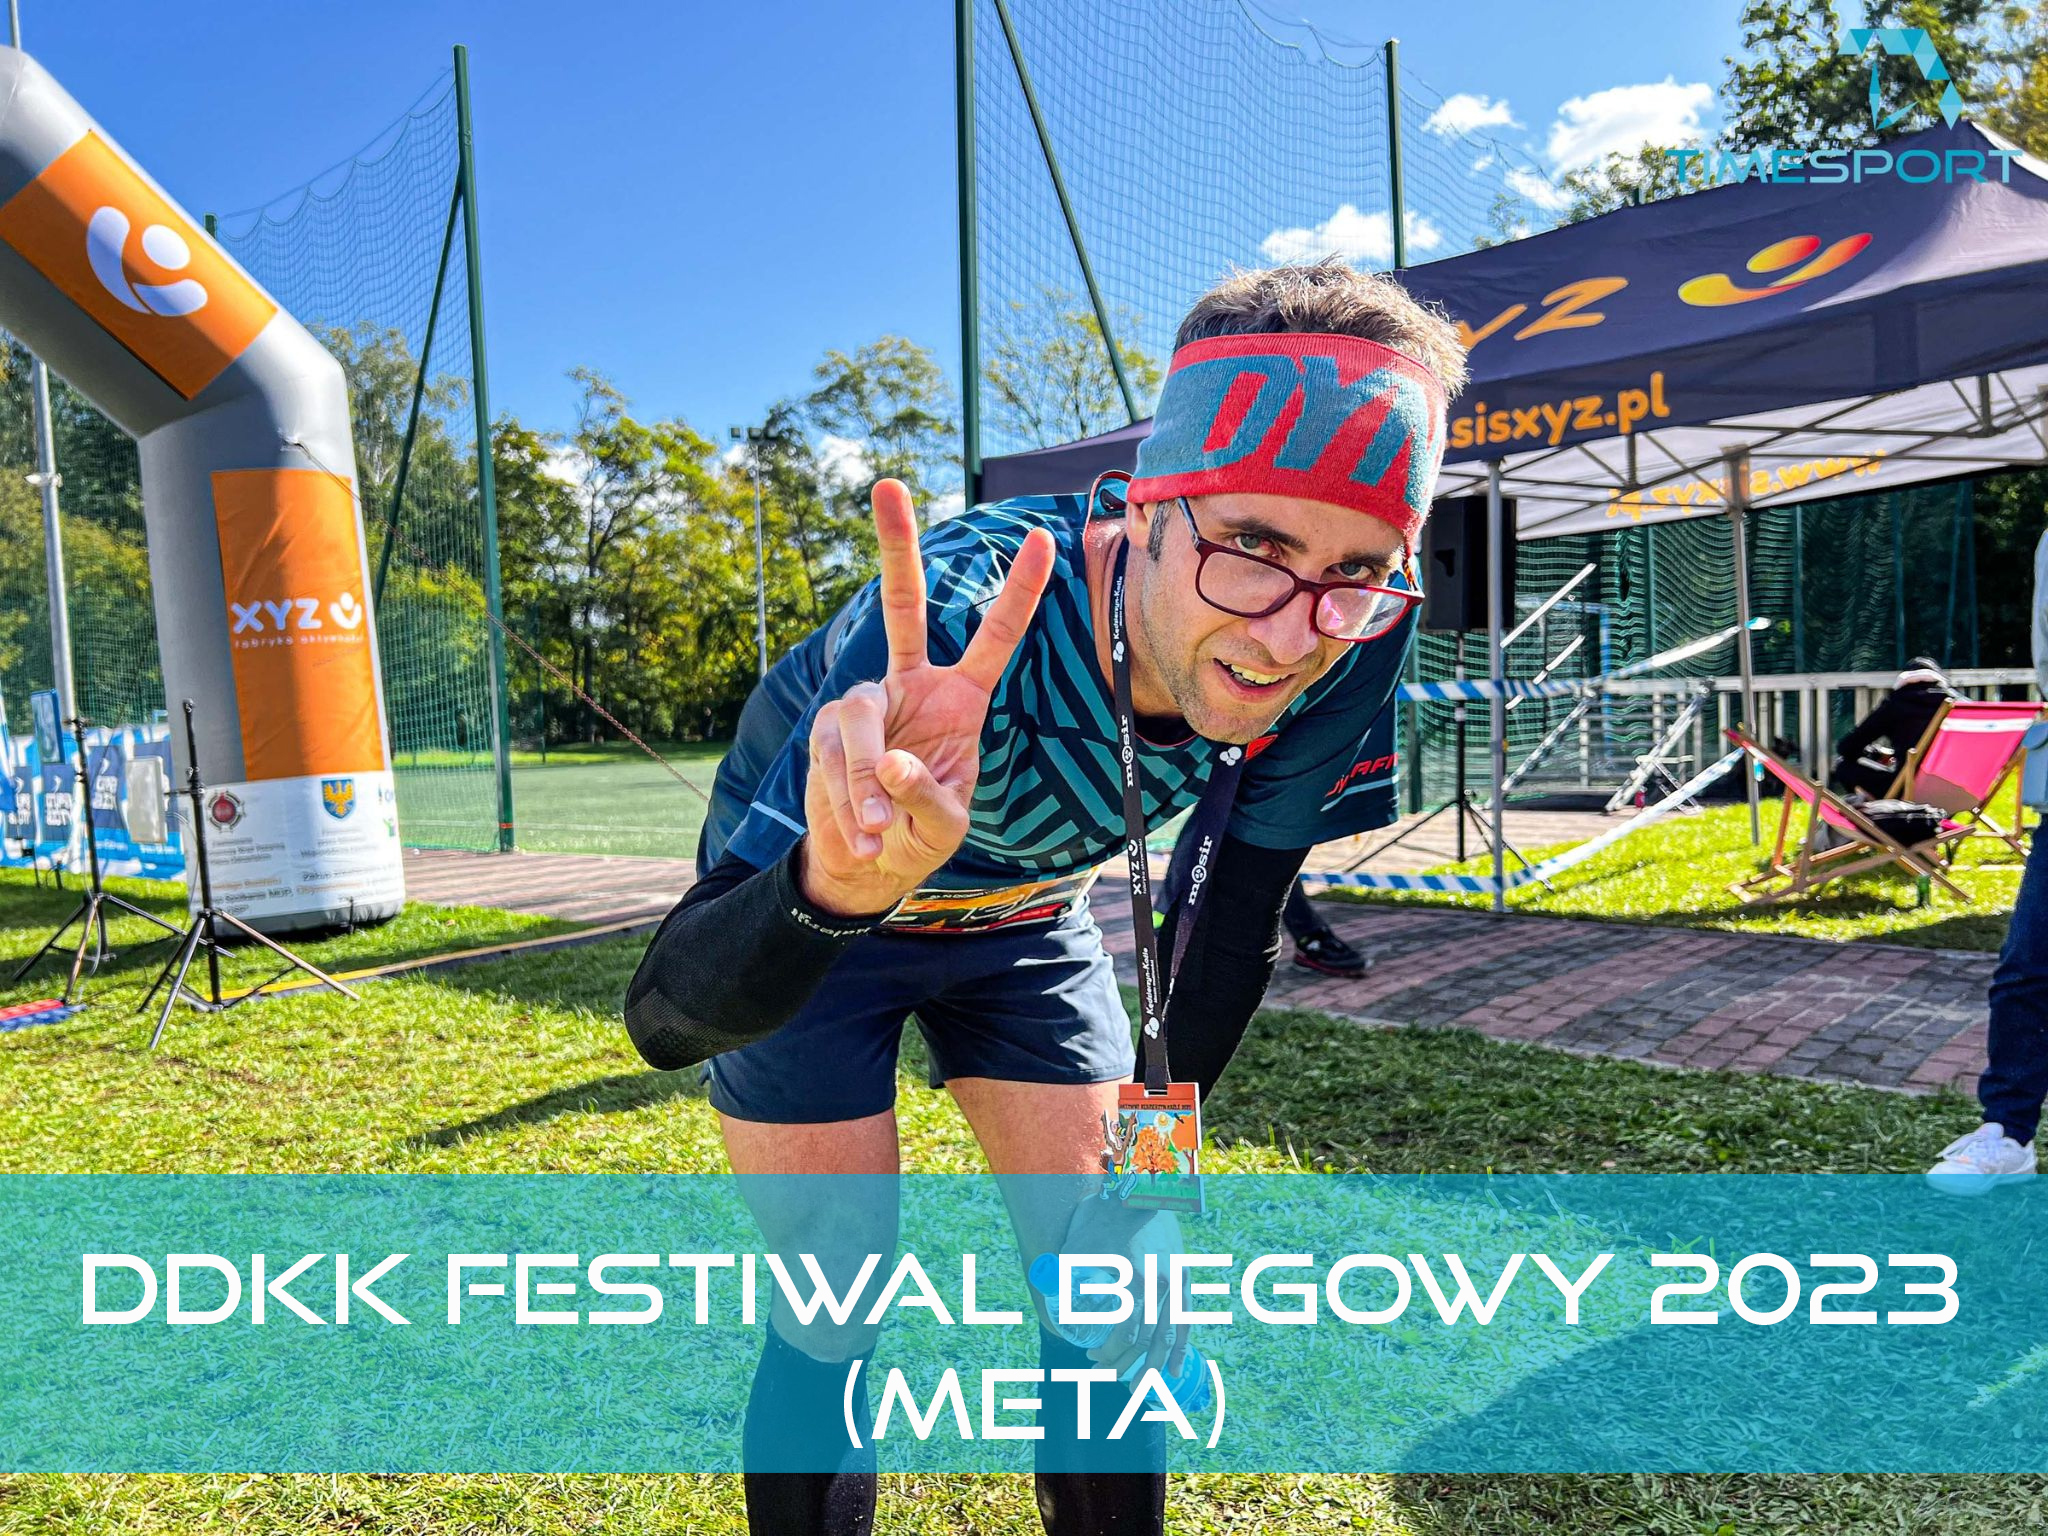 DDKK Festiwal Biegowy 2023 Meta